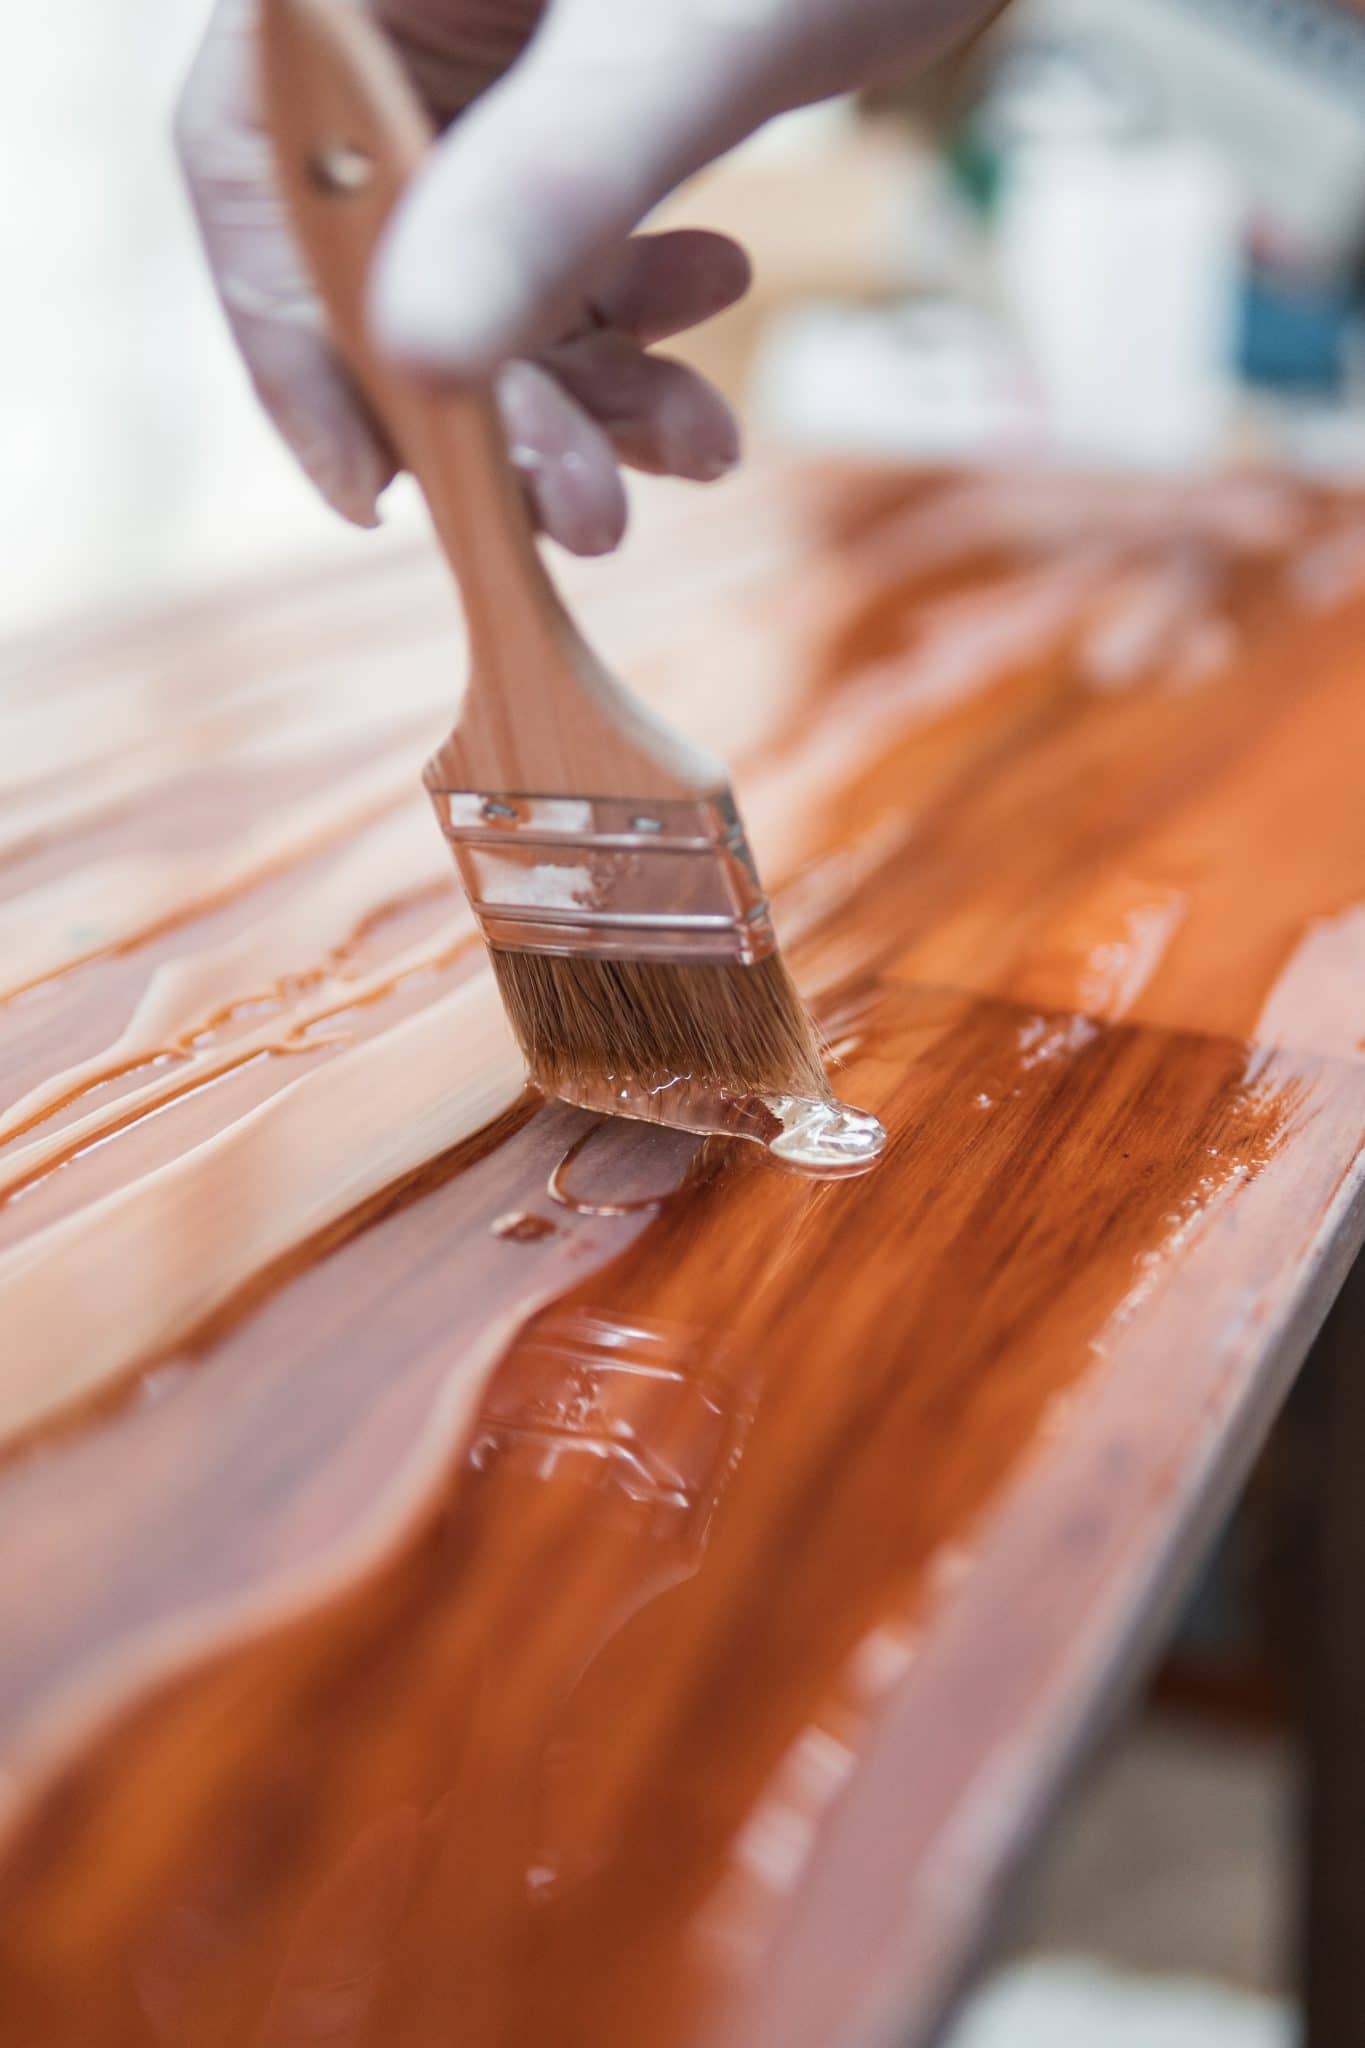 Quelle peinture choisir pour repeindre un meuble en bois